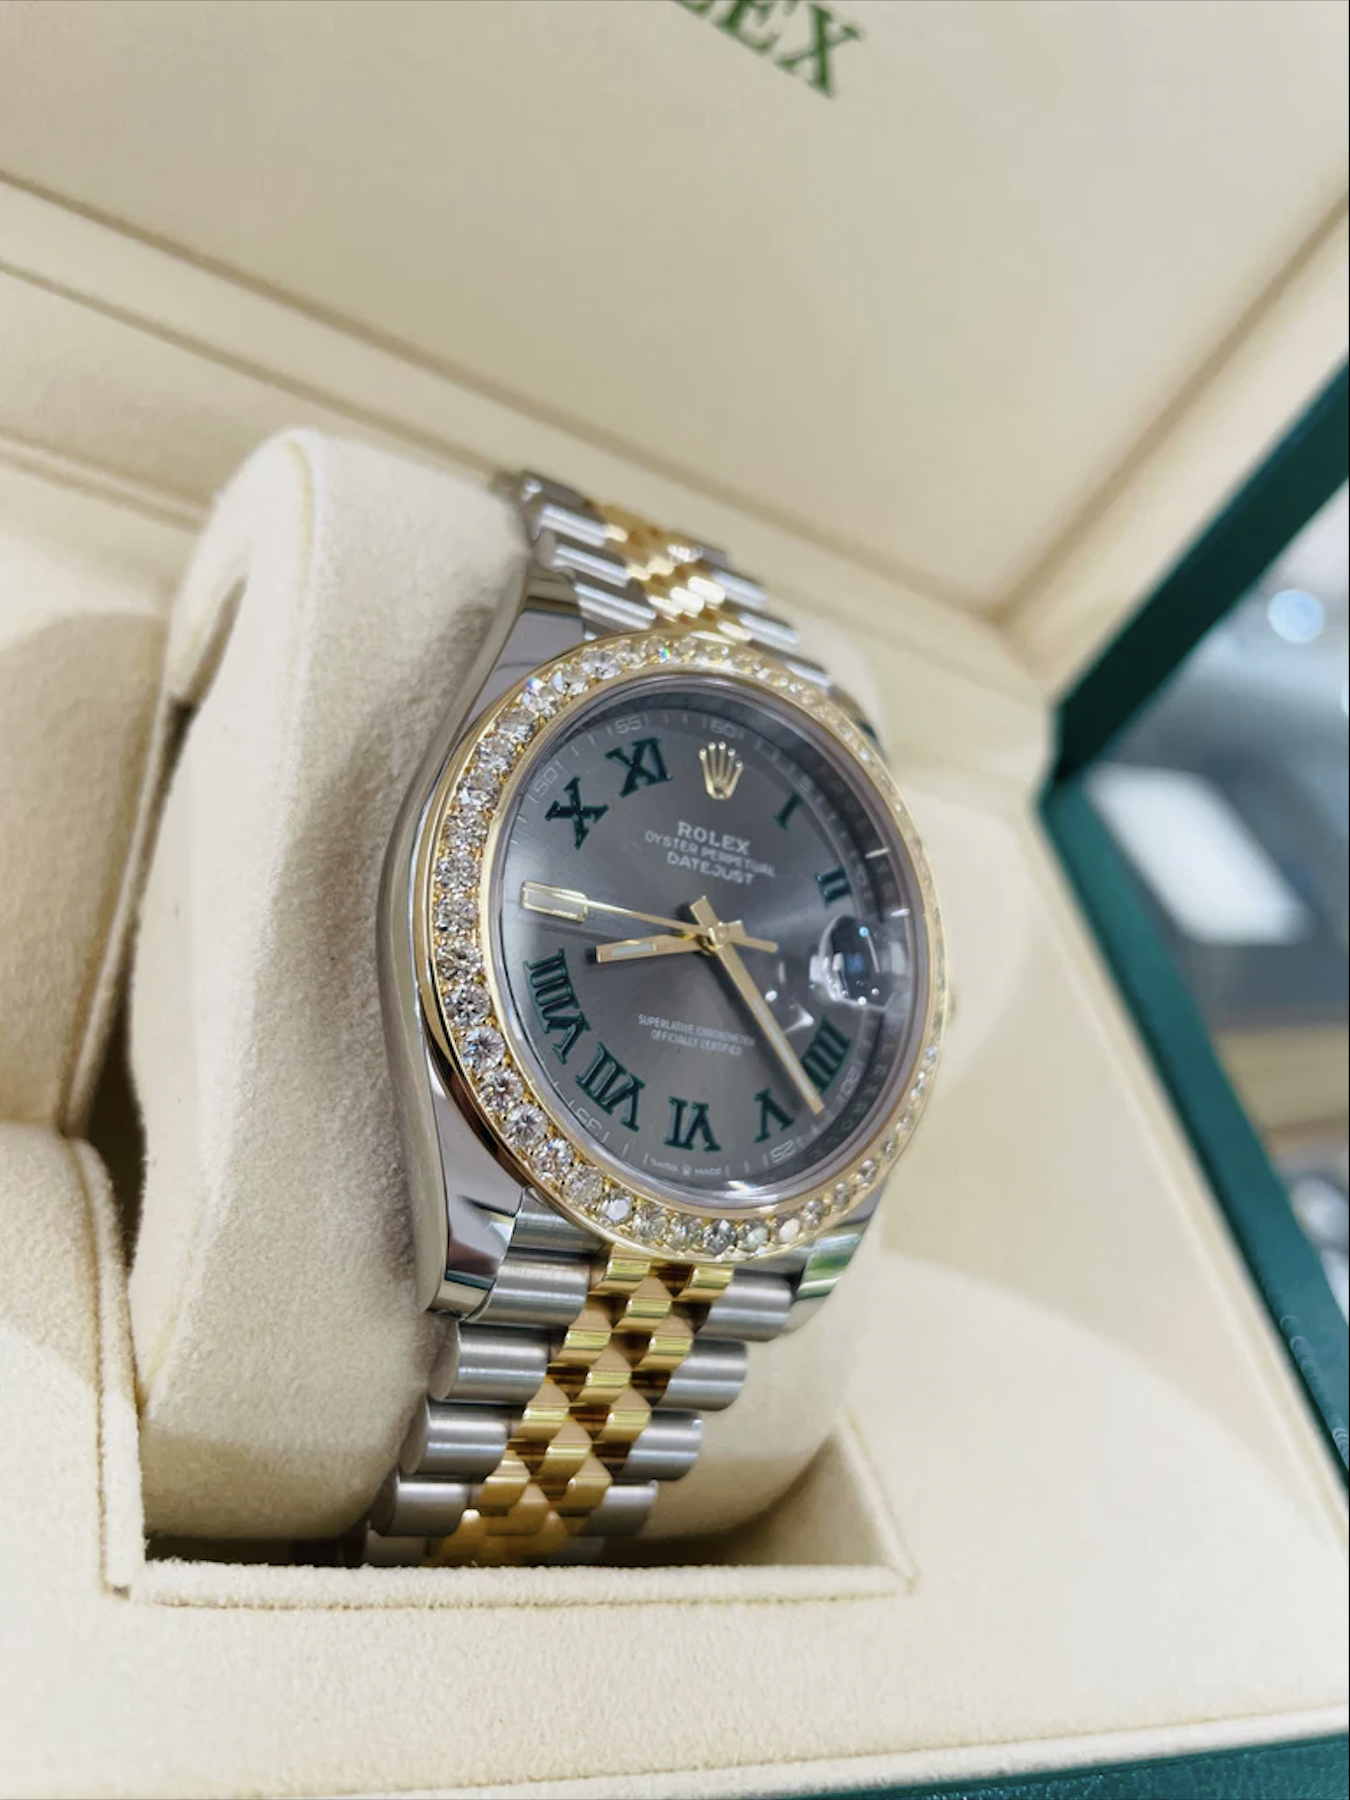 Quang Hải đeo đồng hồ Rolex trong ngày cưới - ảnh 6